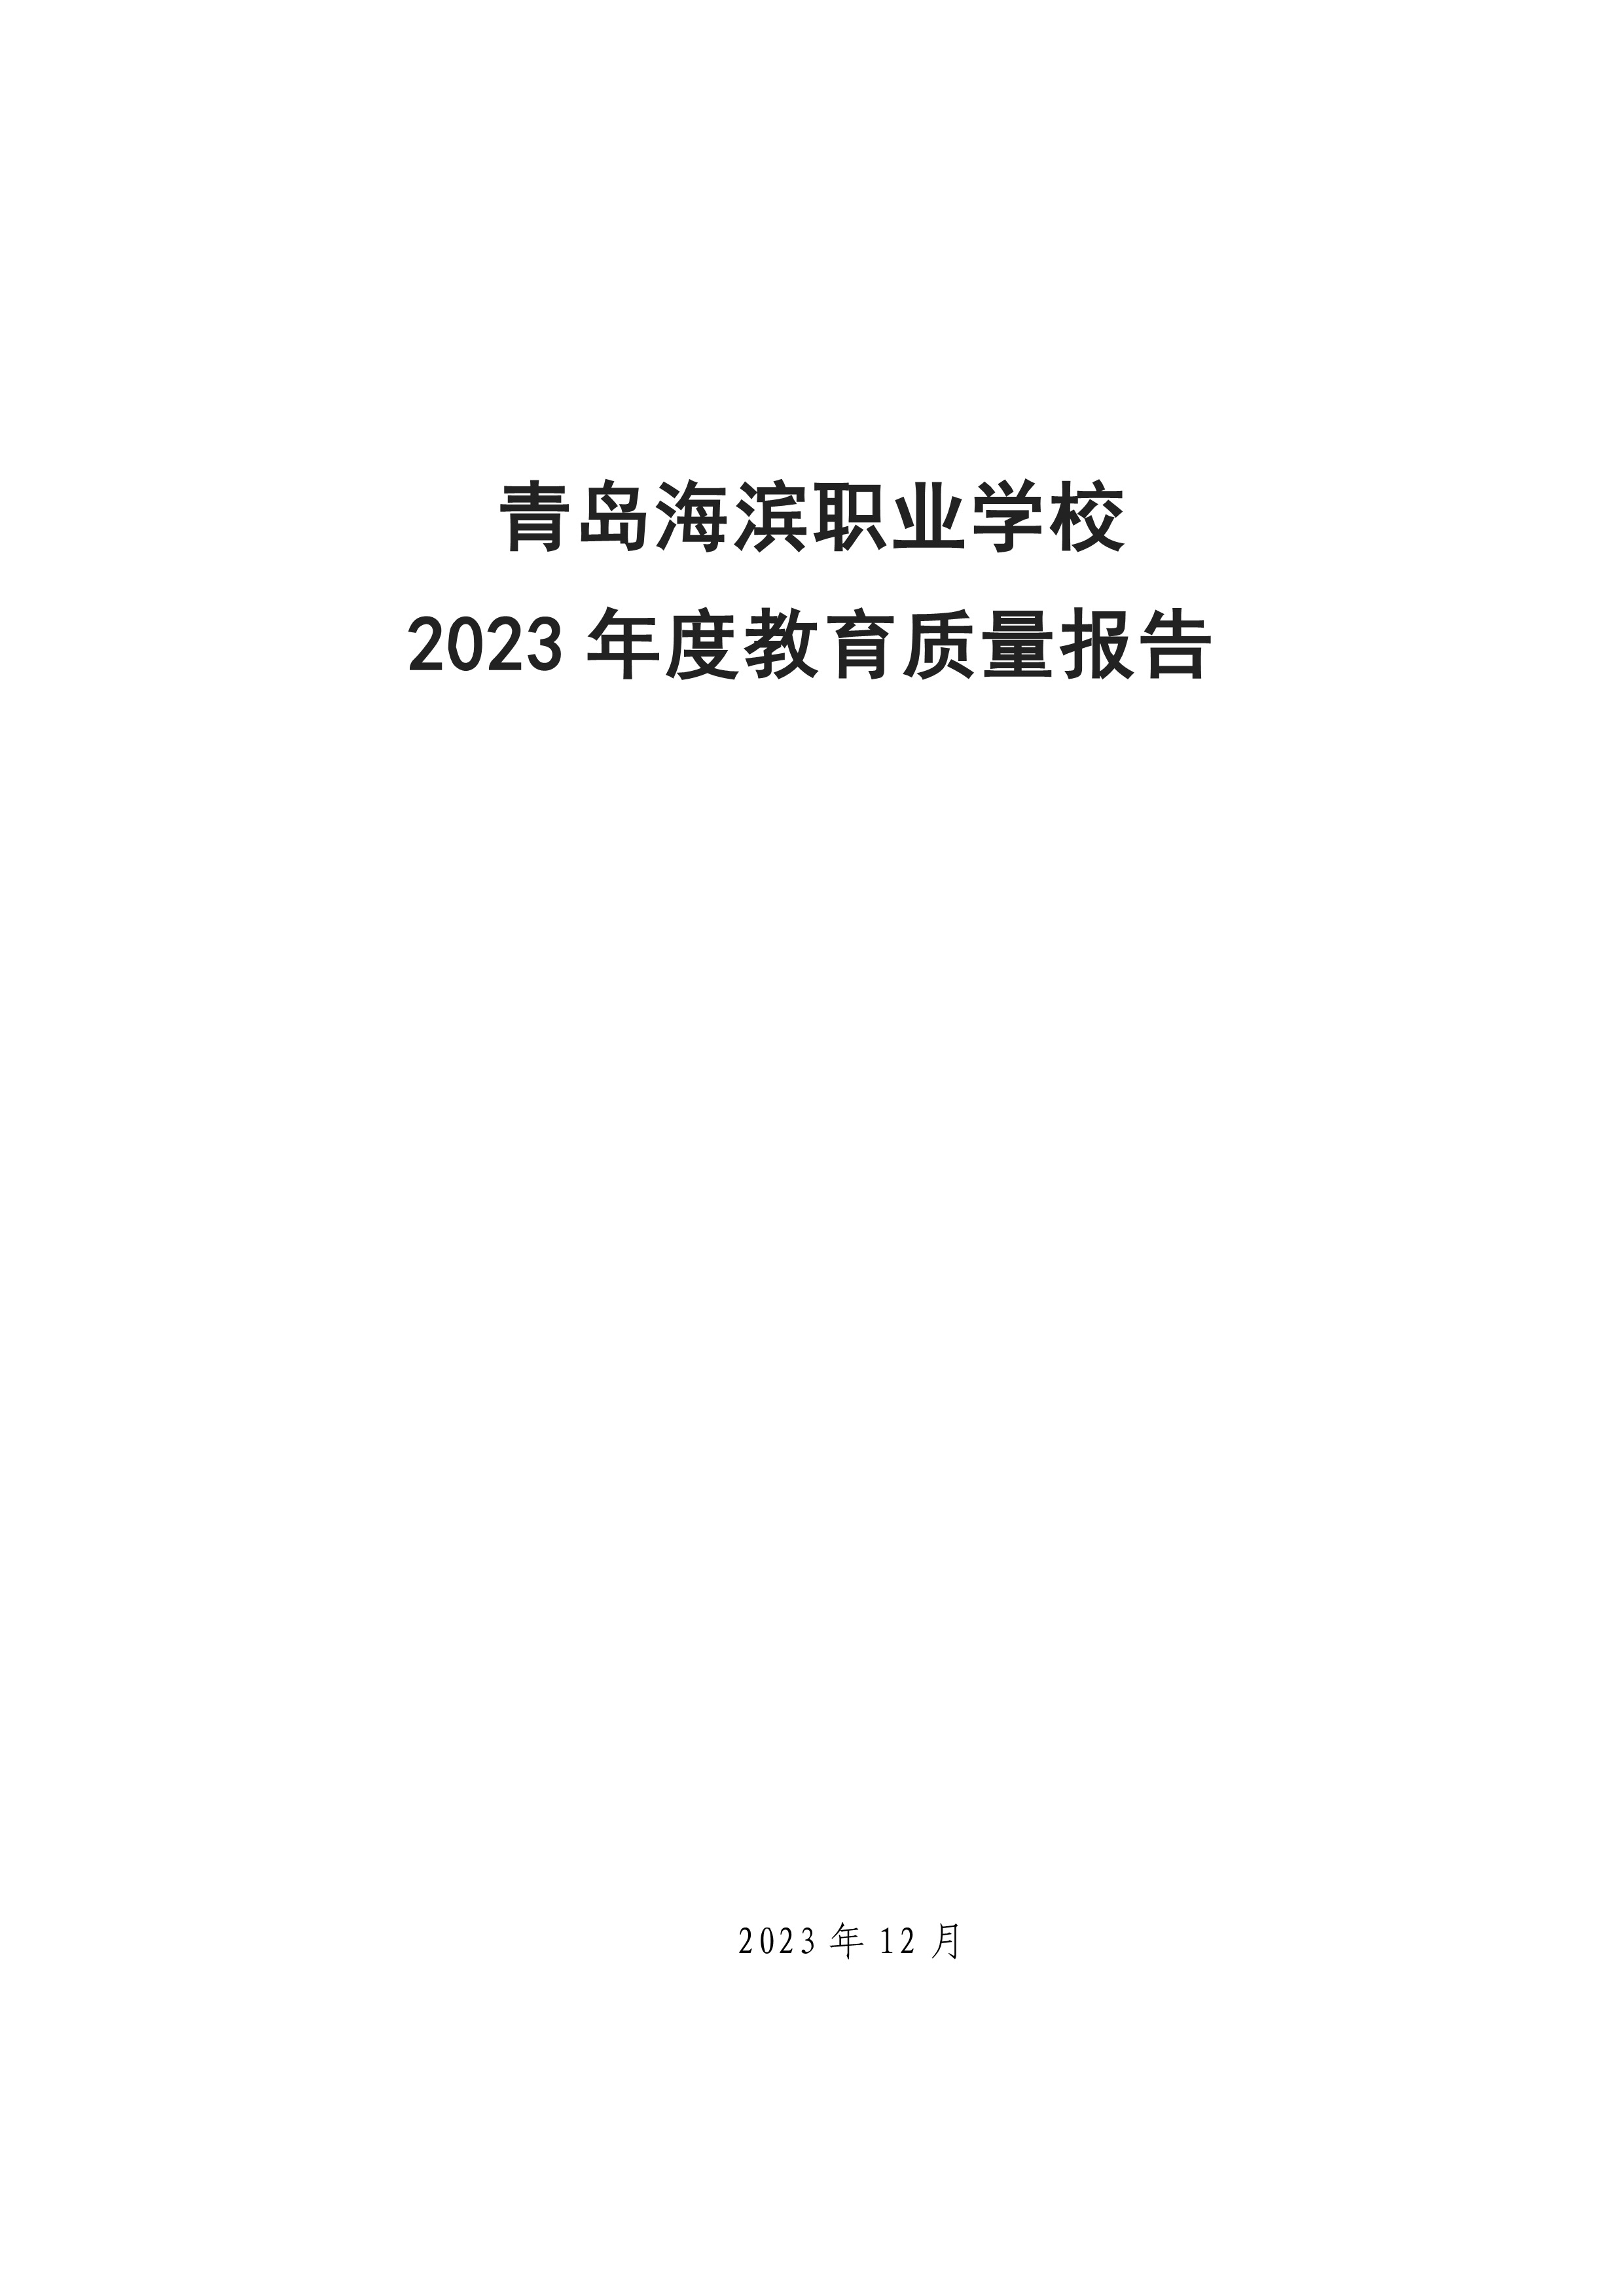 青岛海滨职业学校2023年度教育质量年度报告_1.jpeg